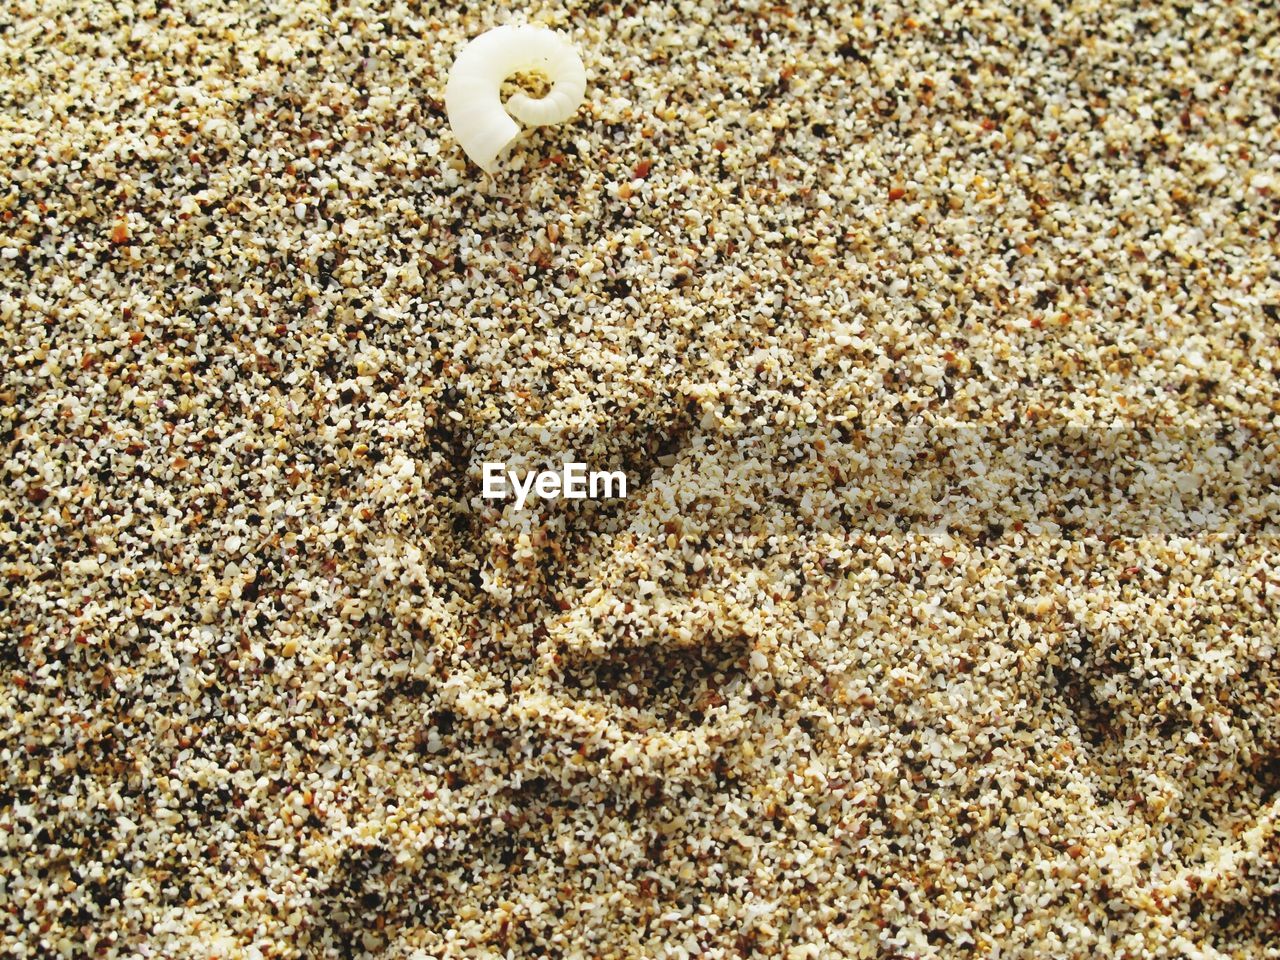 A shell on a beach